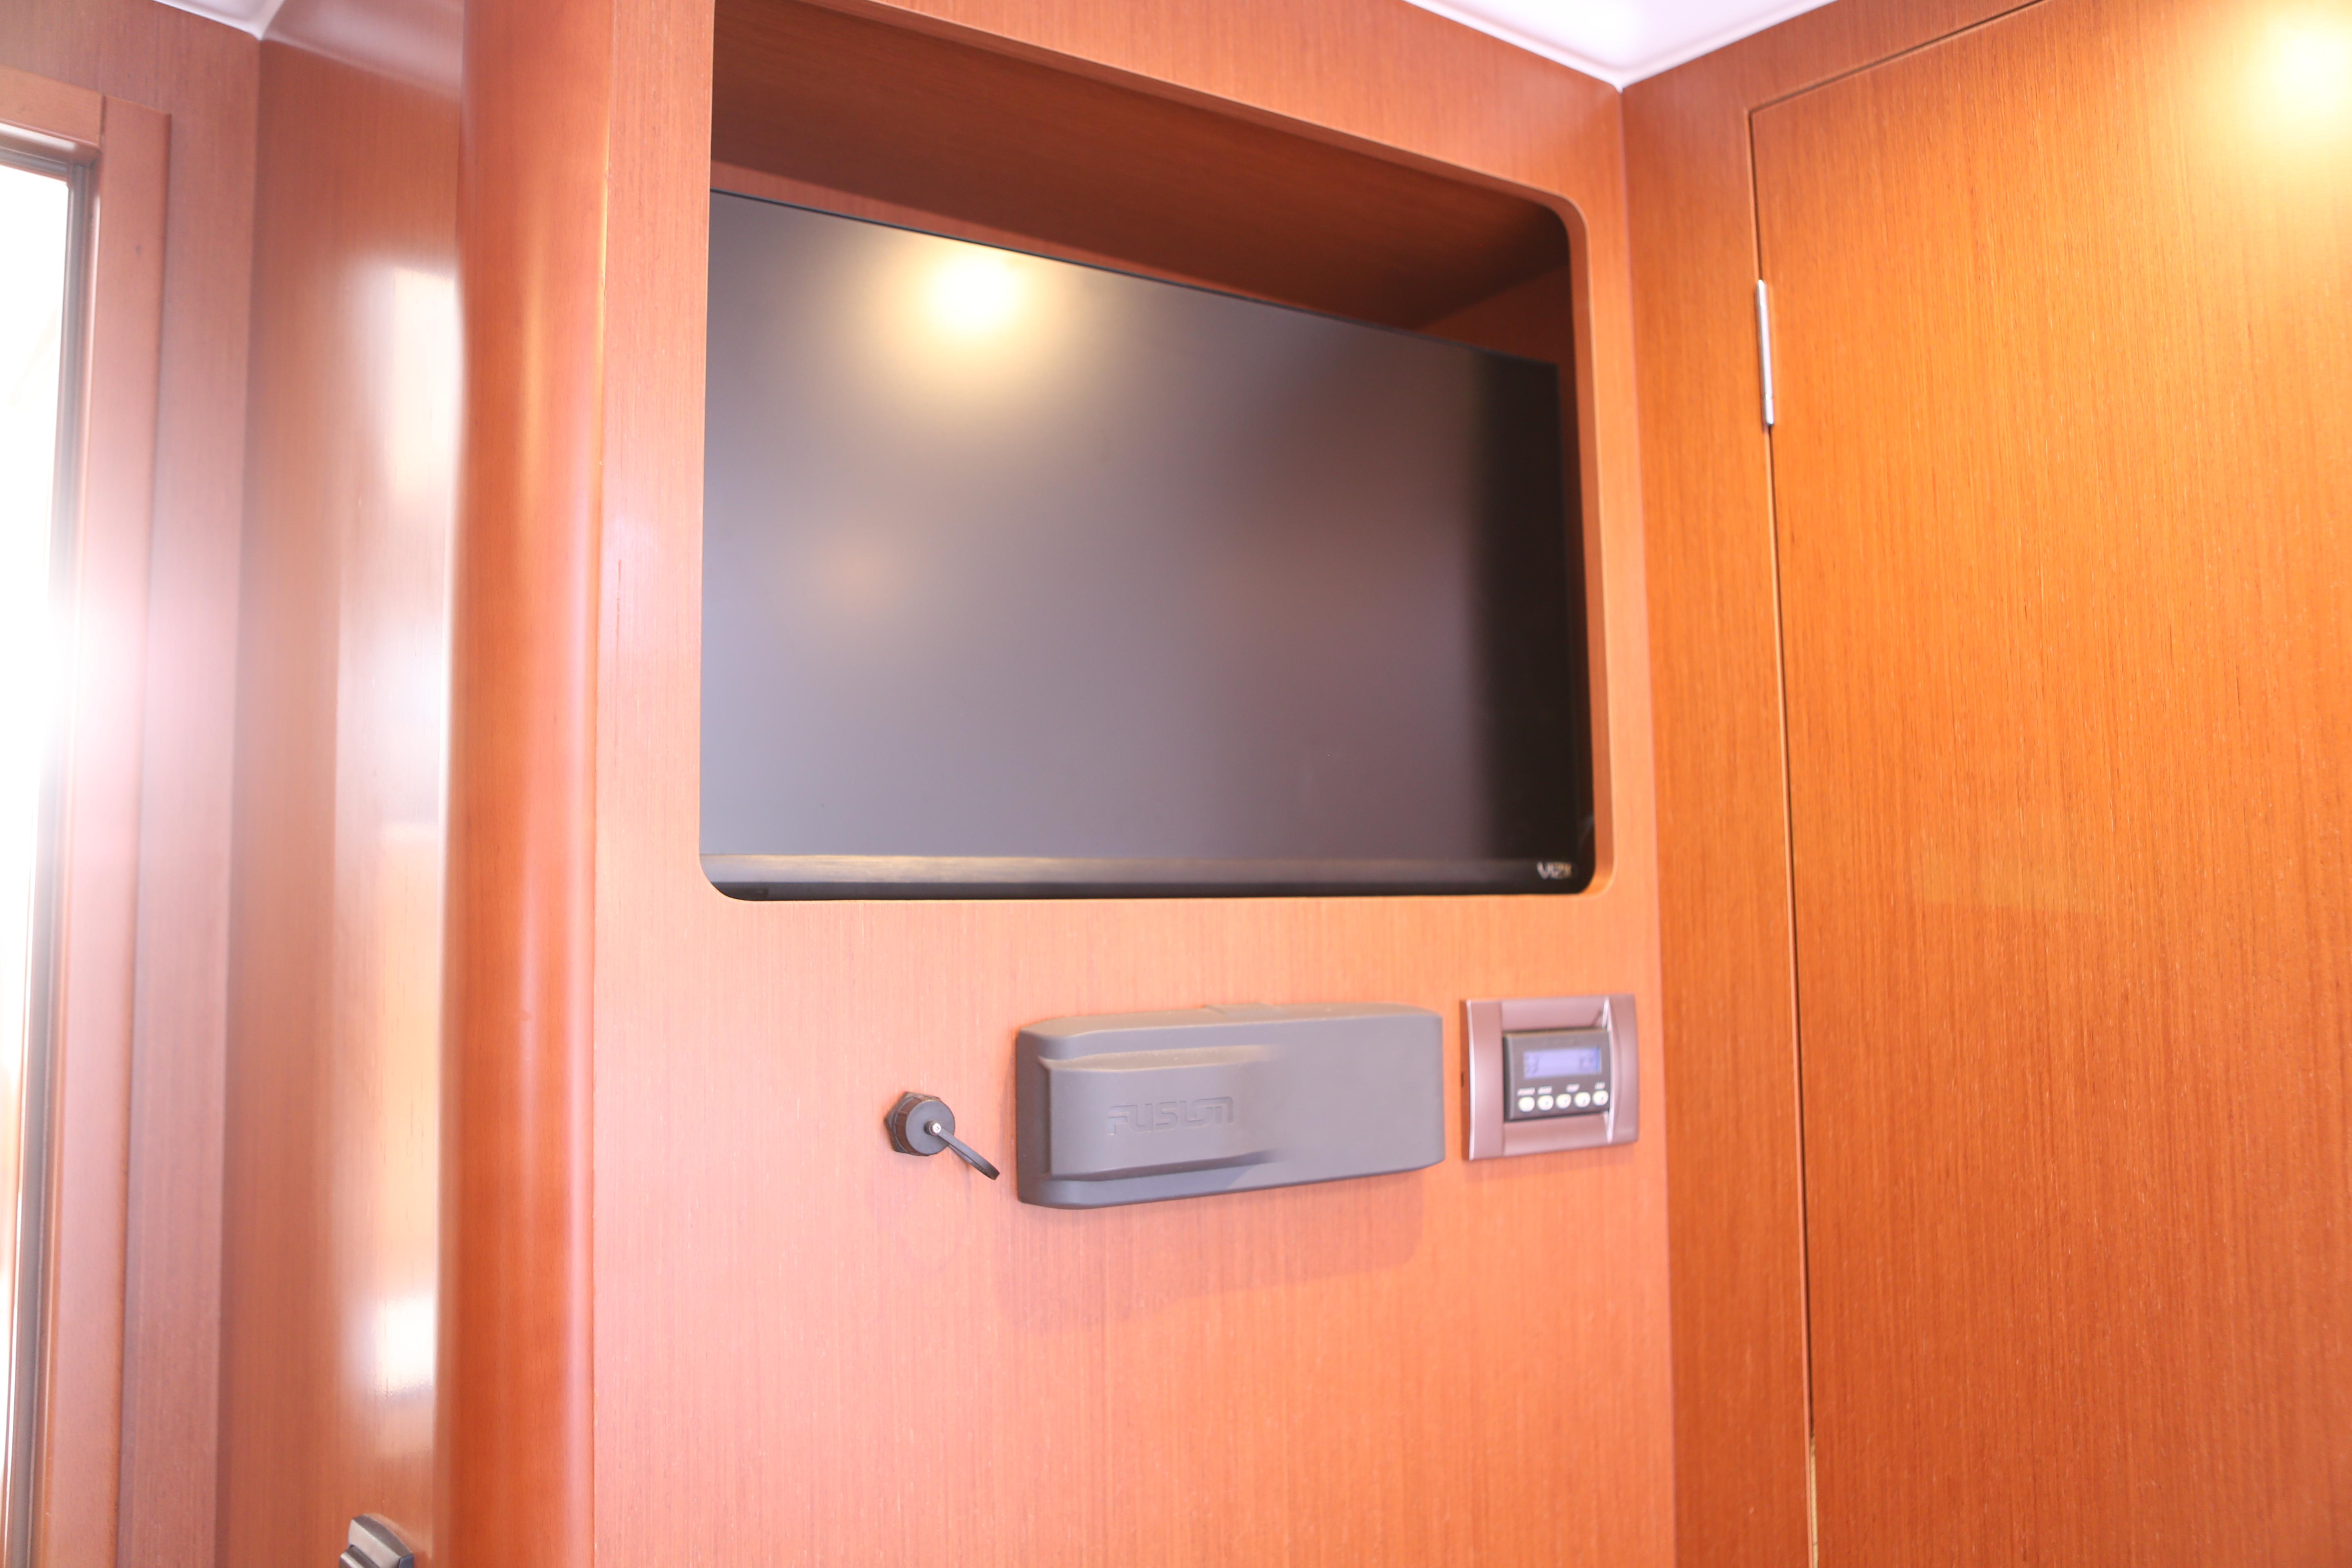 New TV in forward cabin